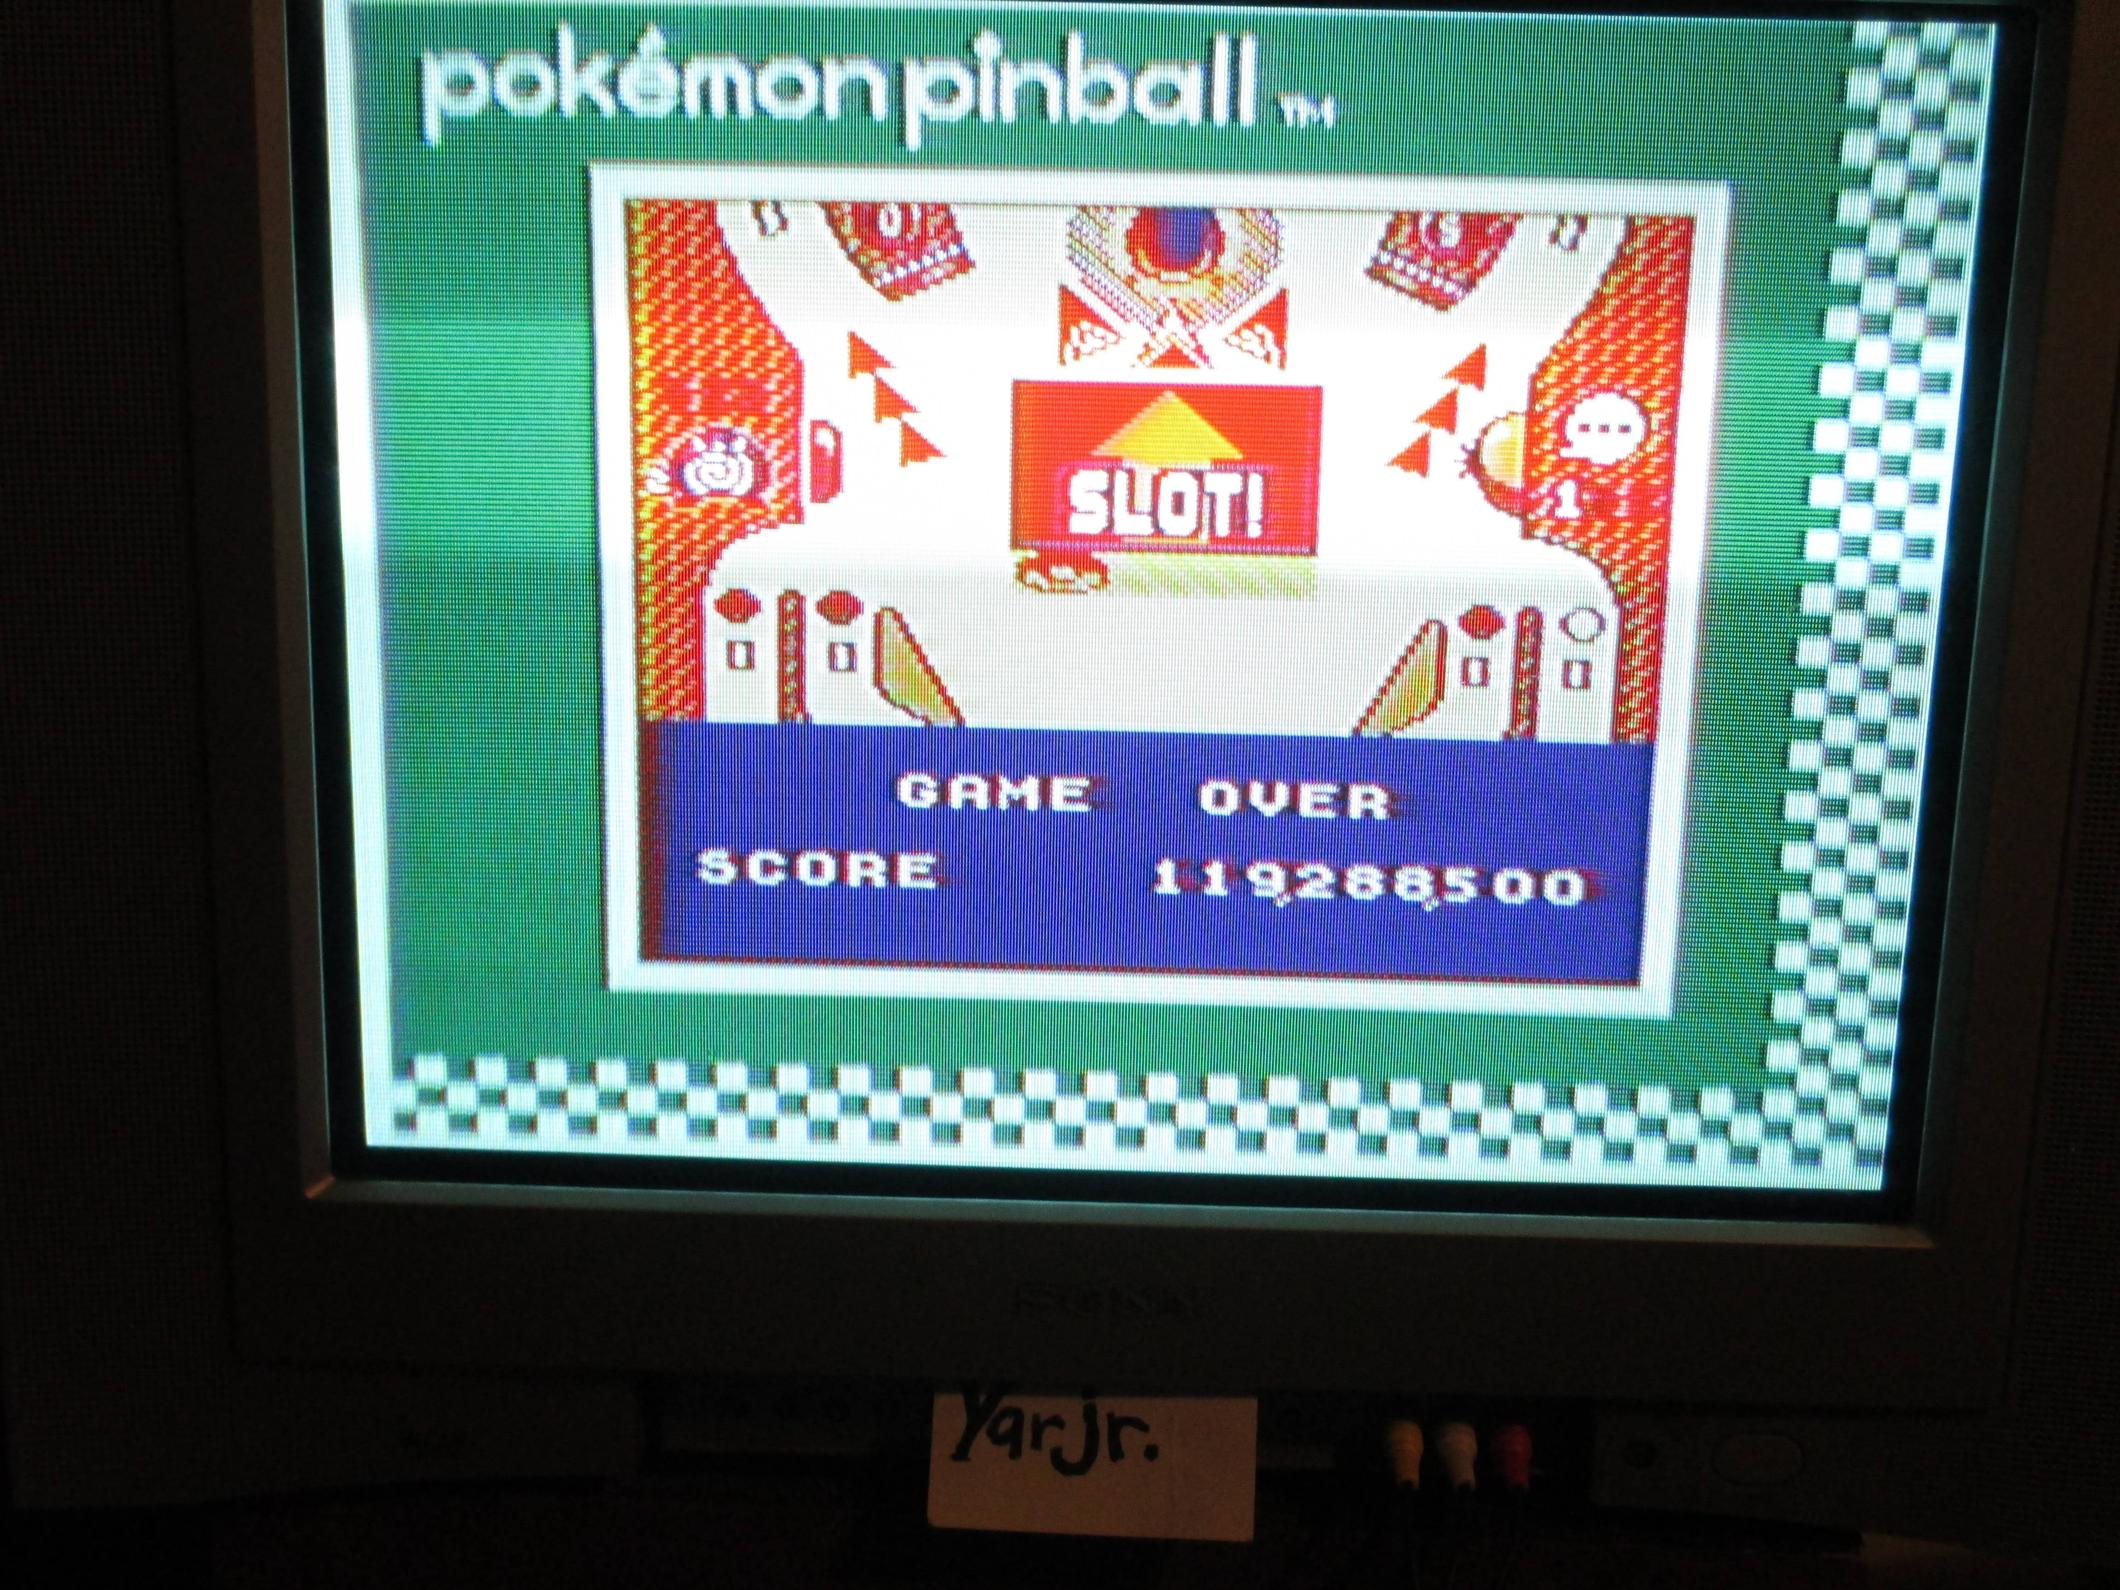 Pokemon Pinball 119,288,500 points